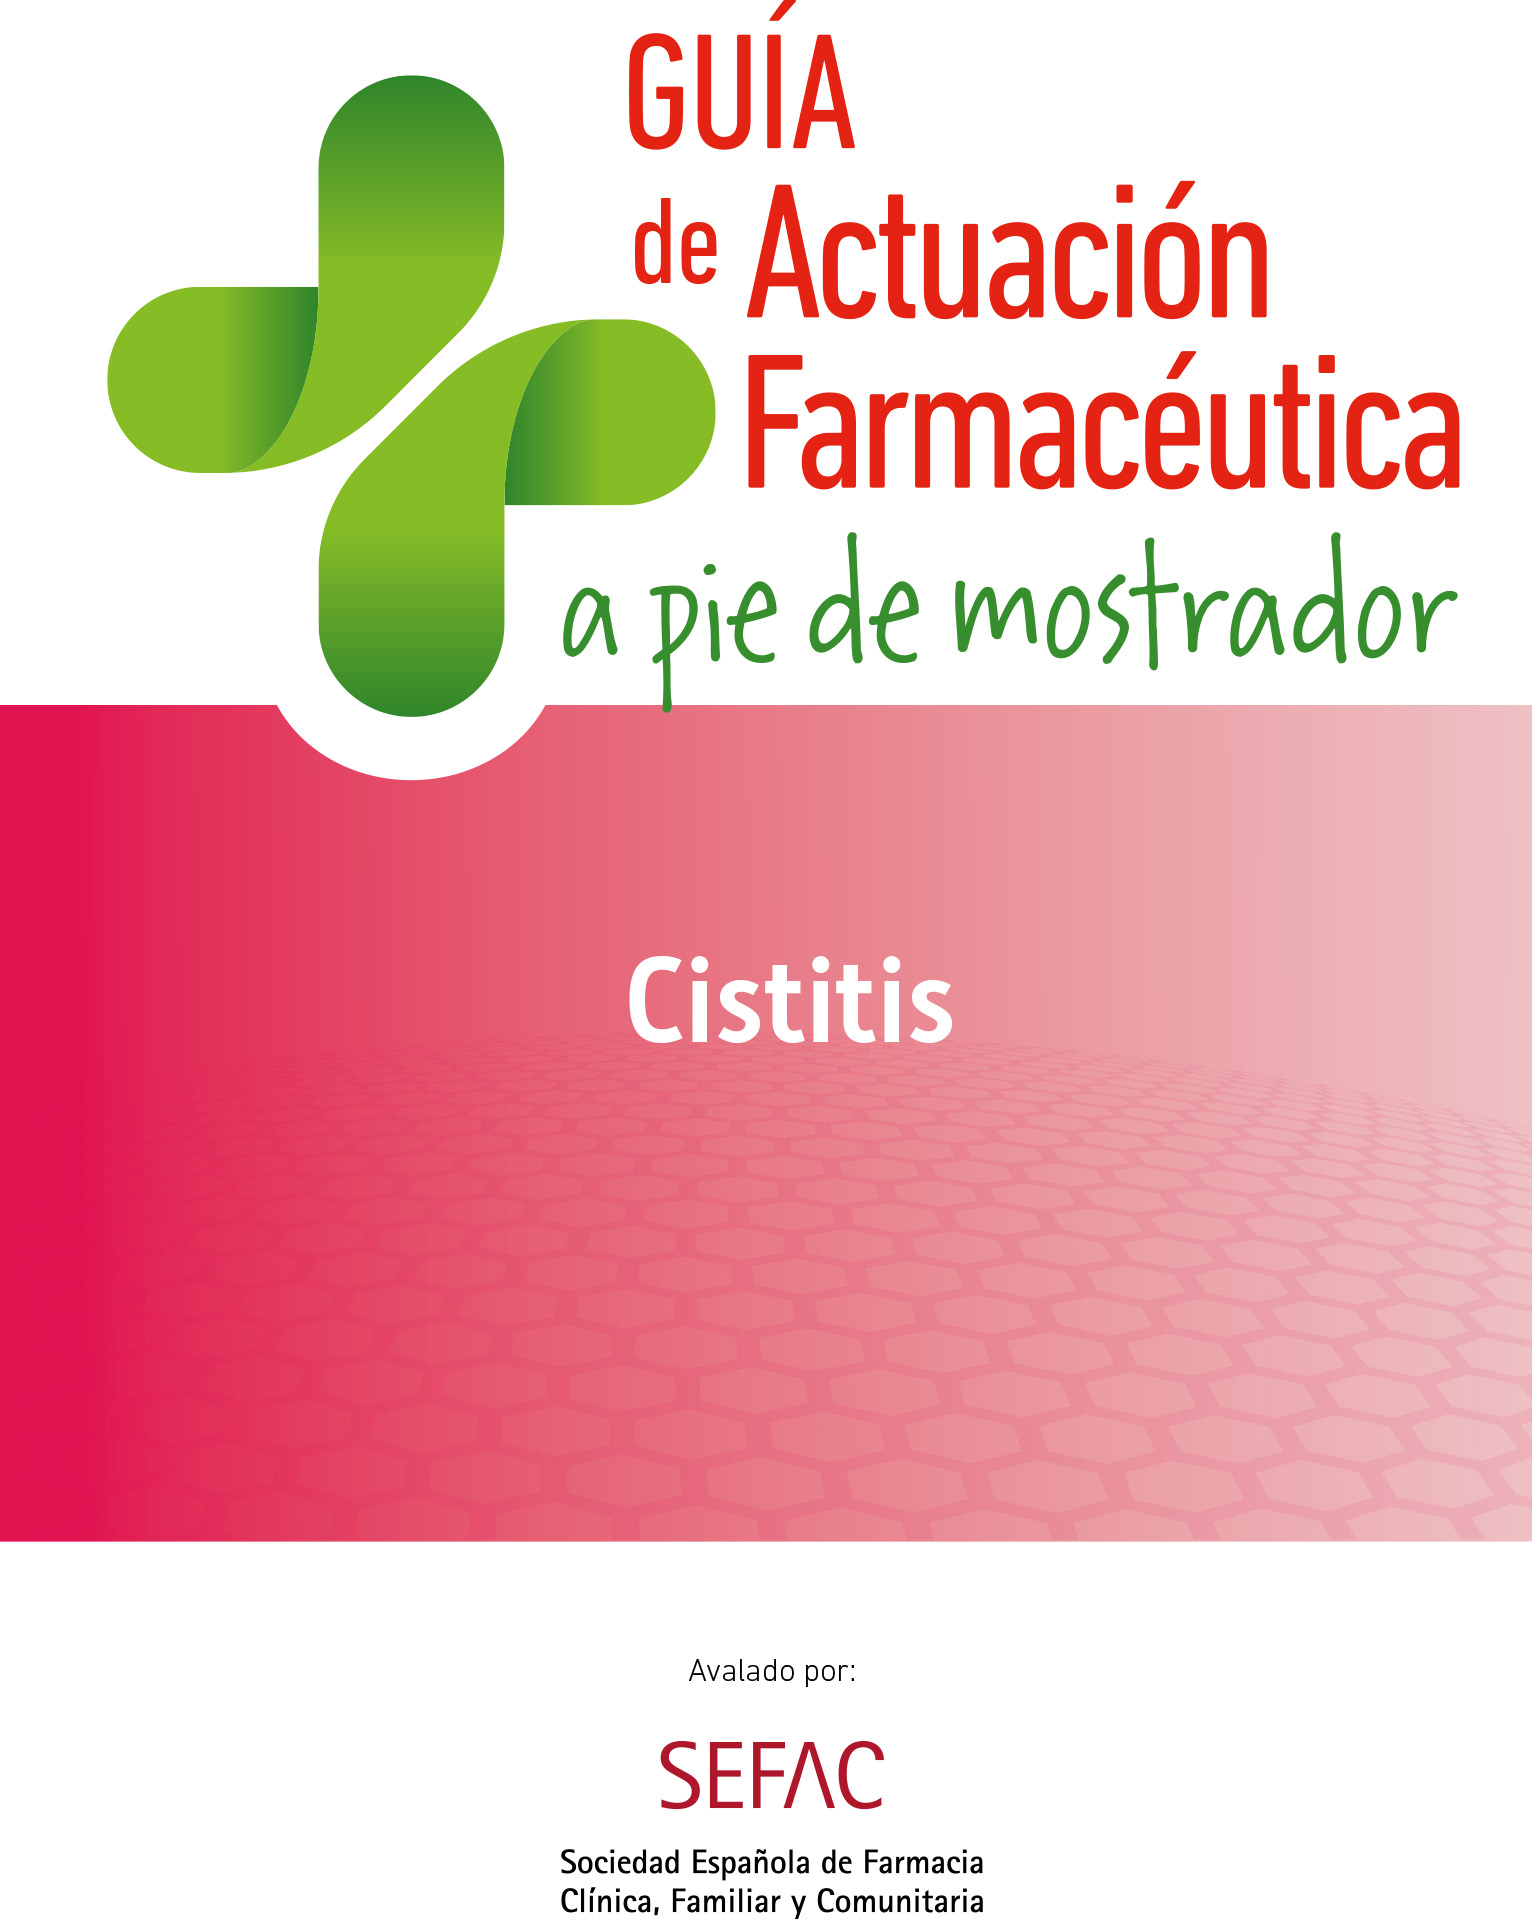 Guía de Actuación Farmacéutica sobre Salud Genitourinaria: Cistitis con la colaboración de SEFAC